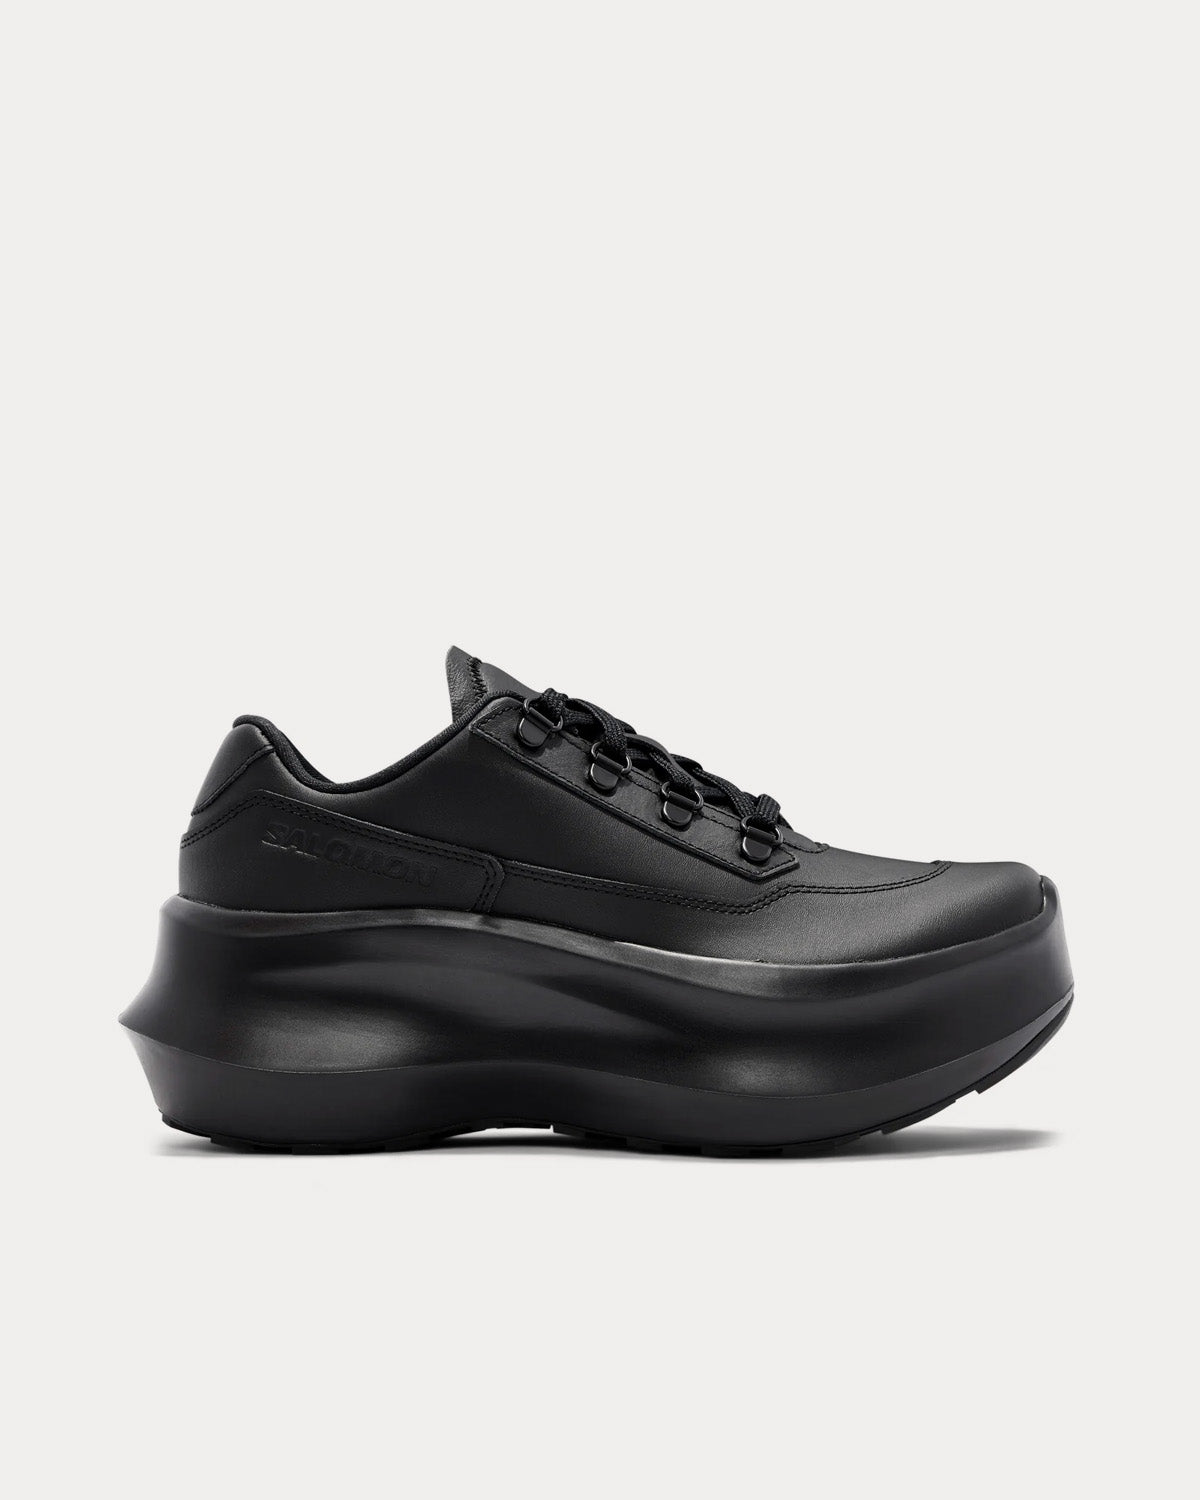 Salomon x Comme des Garçons - SR811 Platform Leather Black Low Top Sneakers